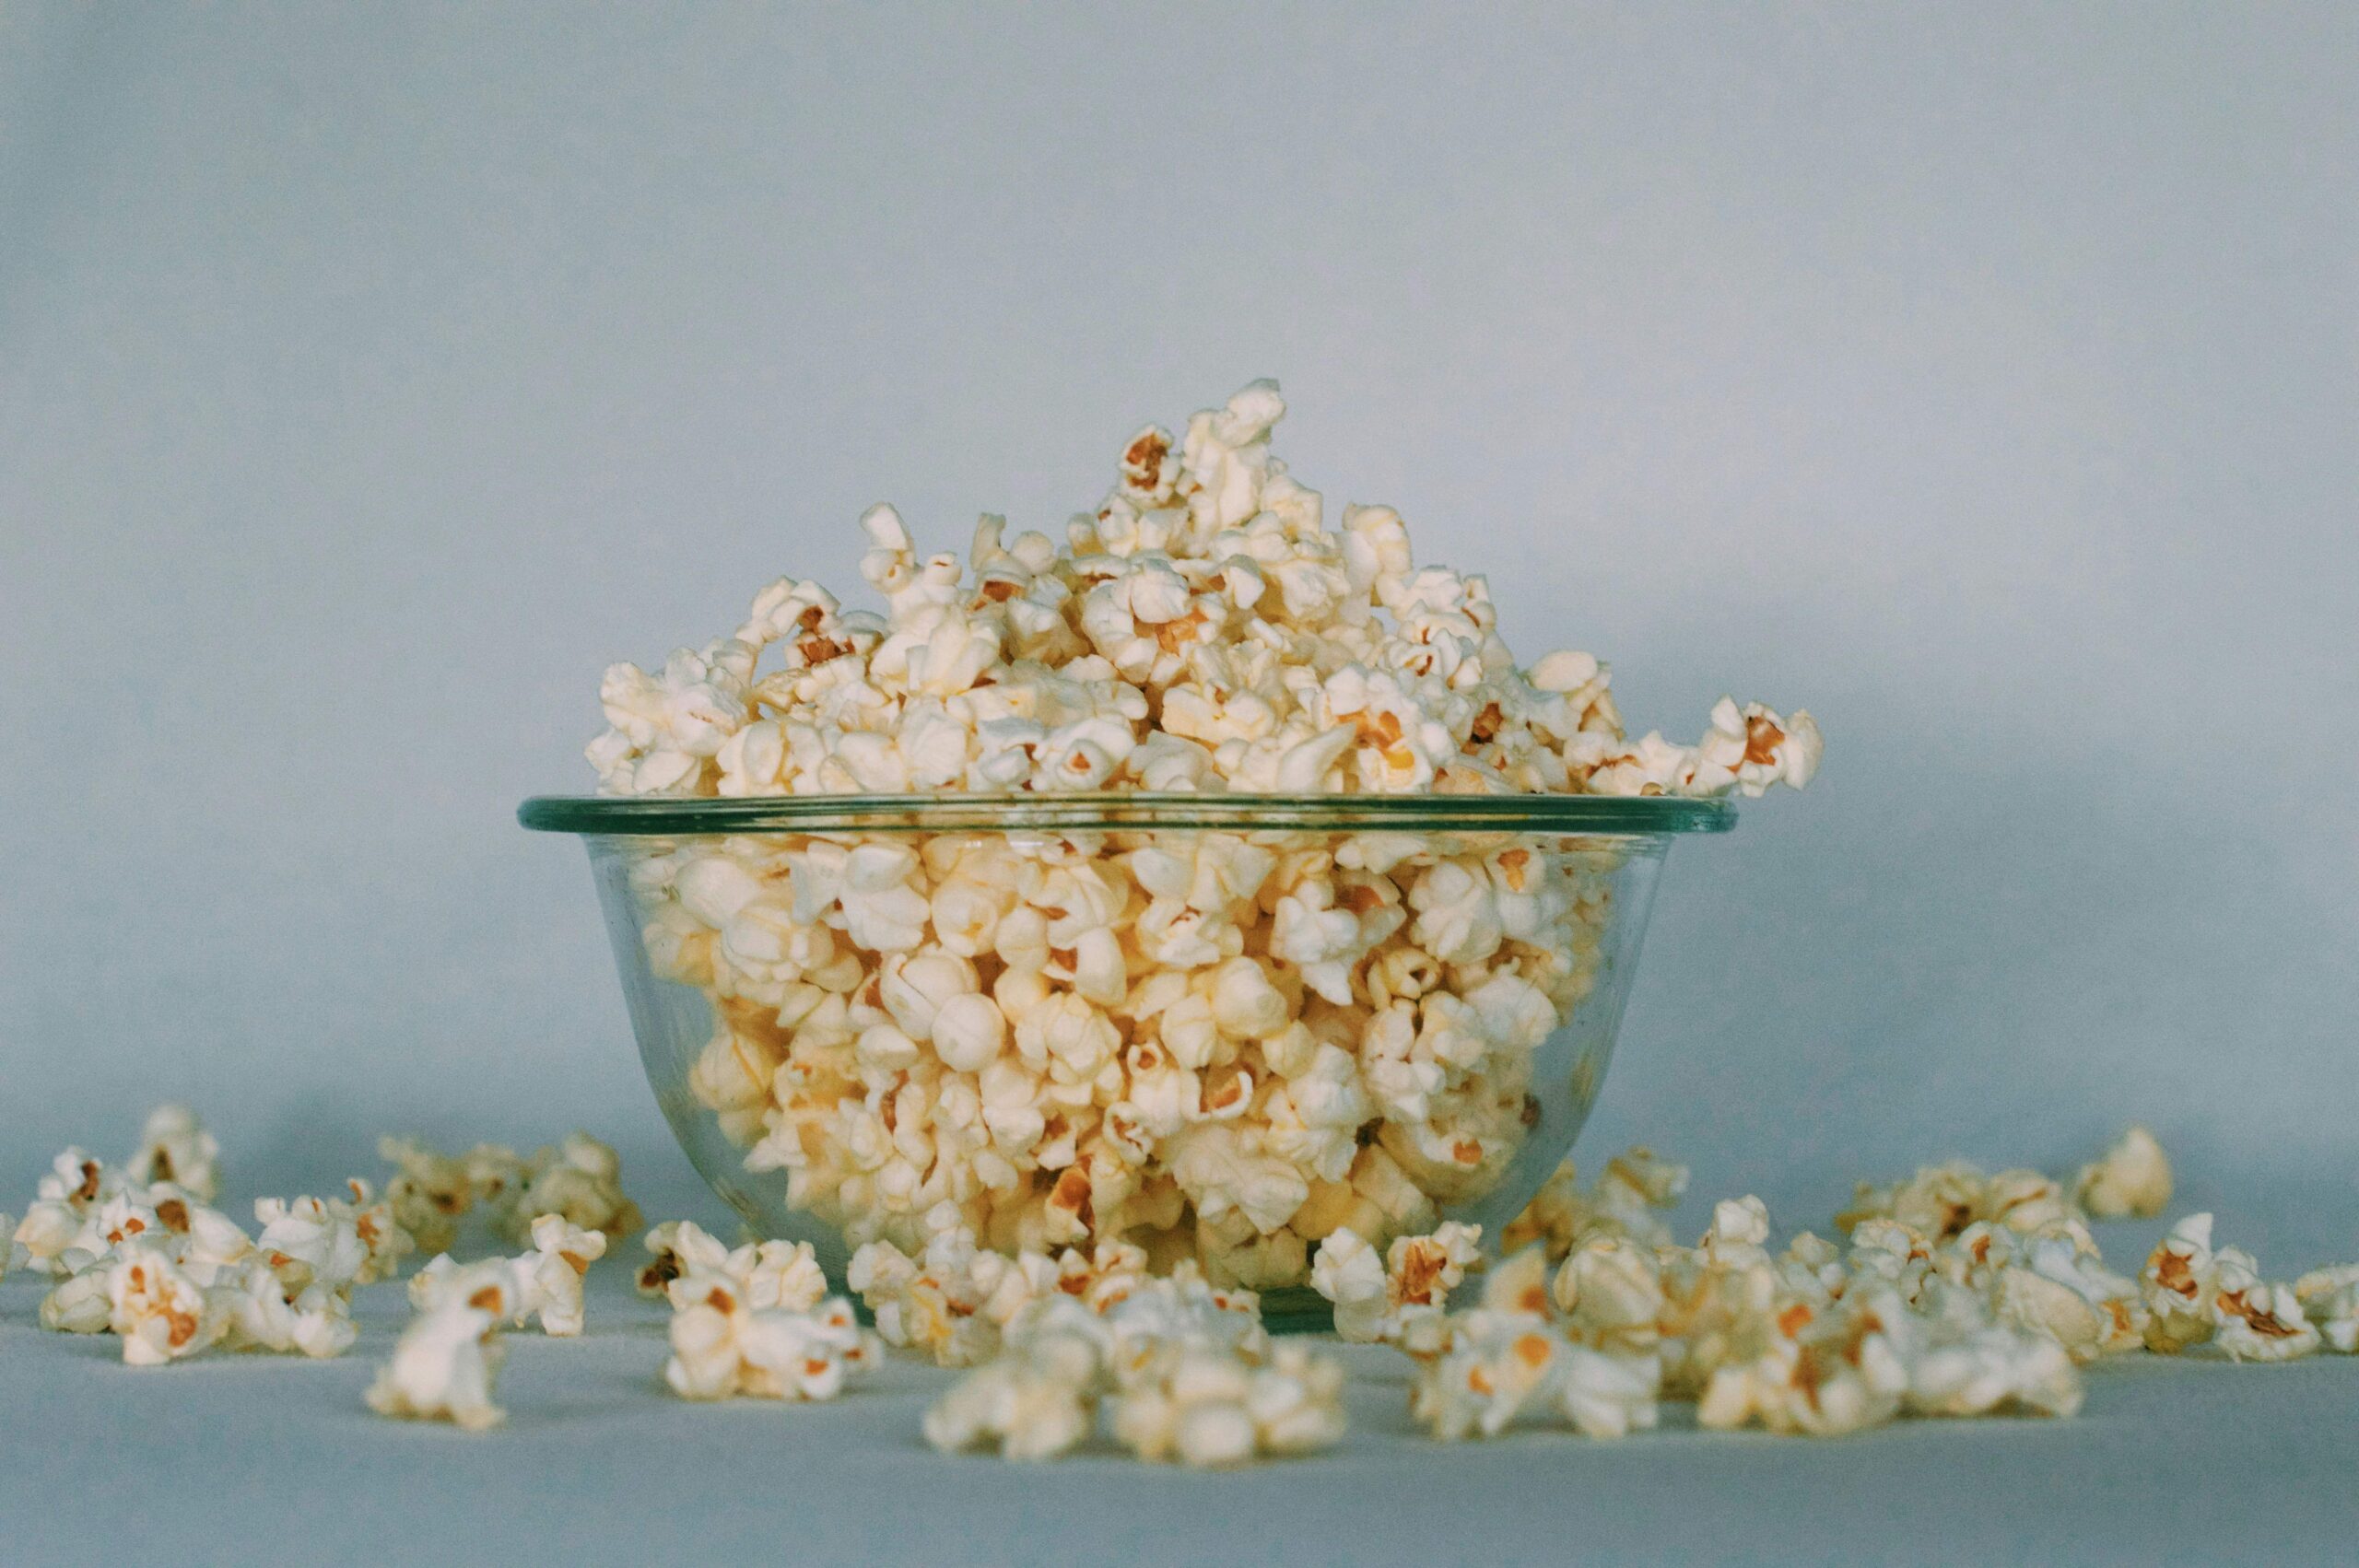 Popcorn Science